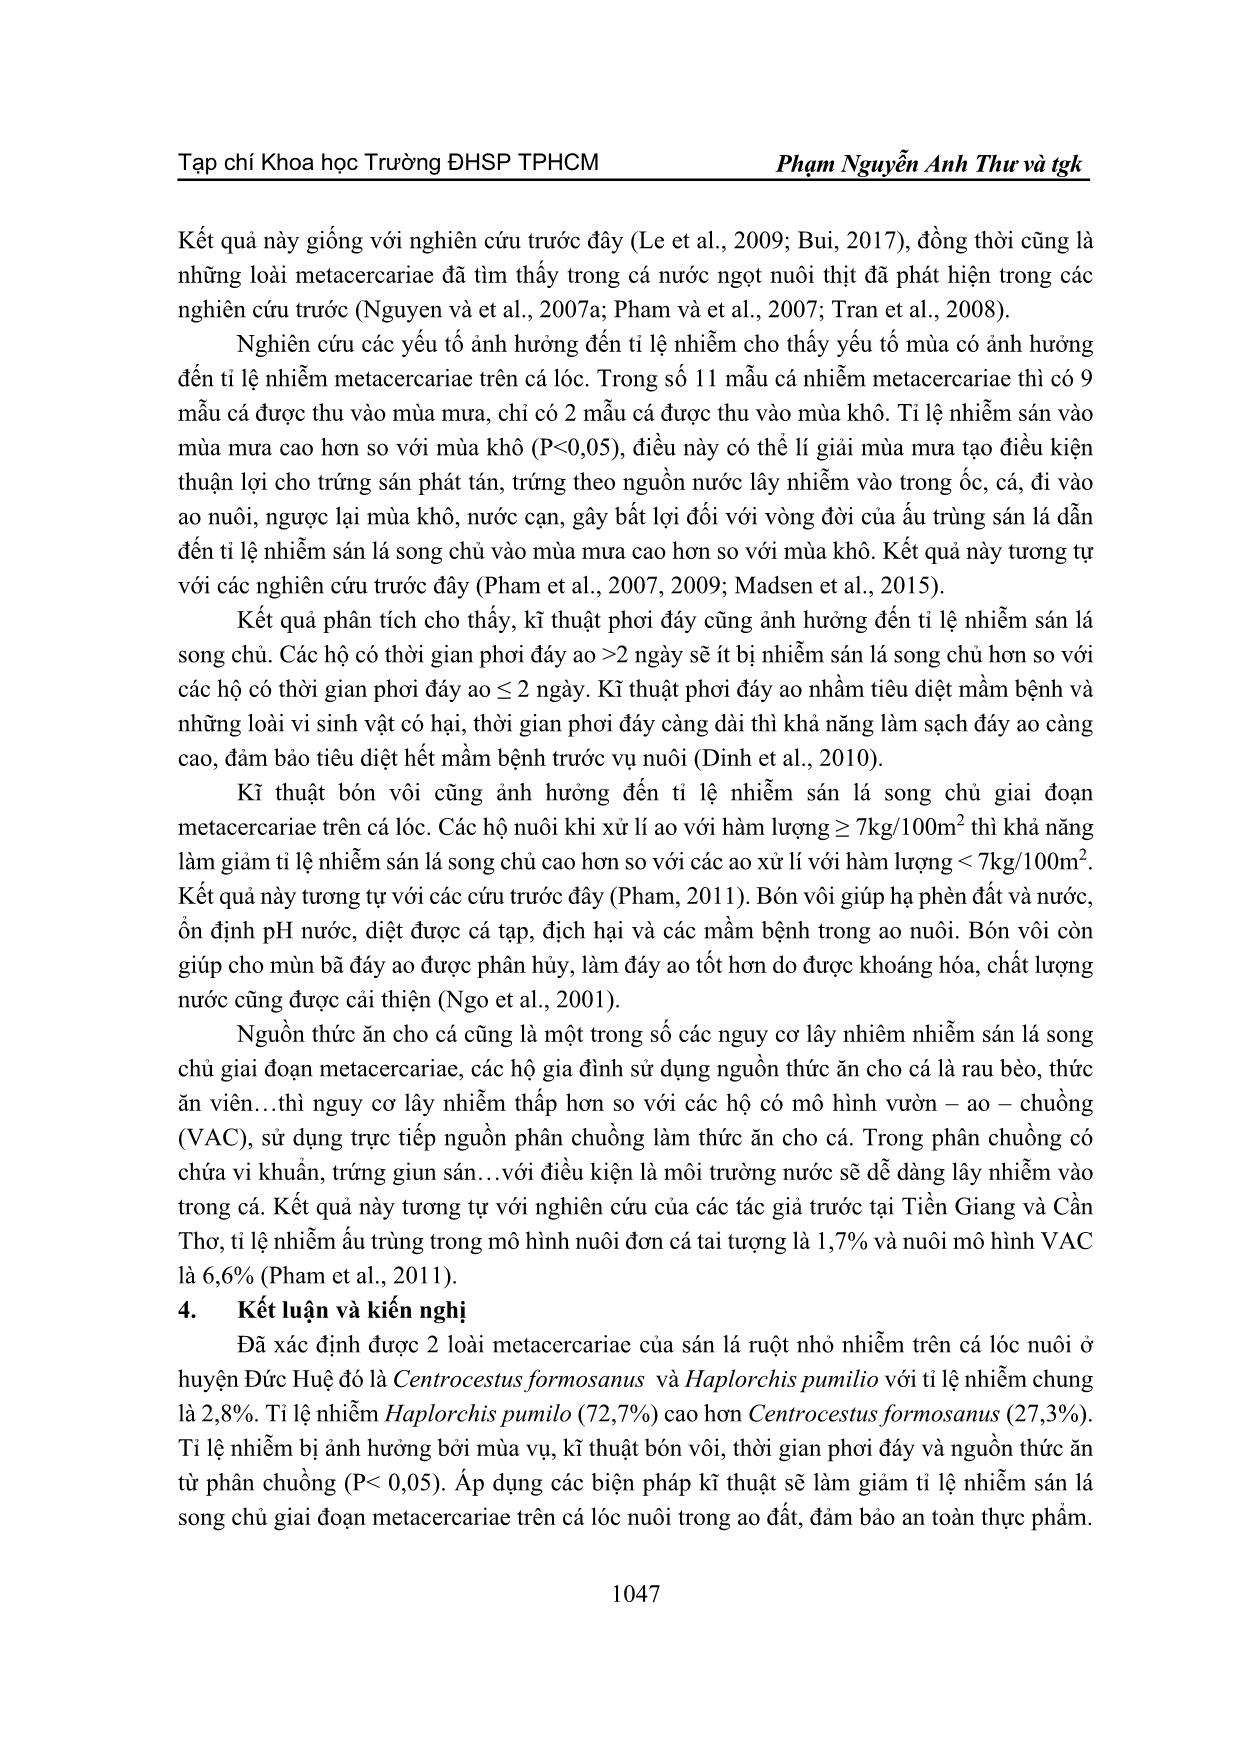 Tỉ lệ nhiễm sán lá song chủ trên cá lóc (channa striata bloch, 1793) ở huyện Đức Huệ, tỉnh Long An trang 7